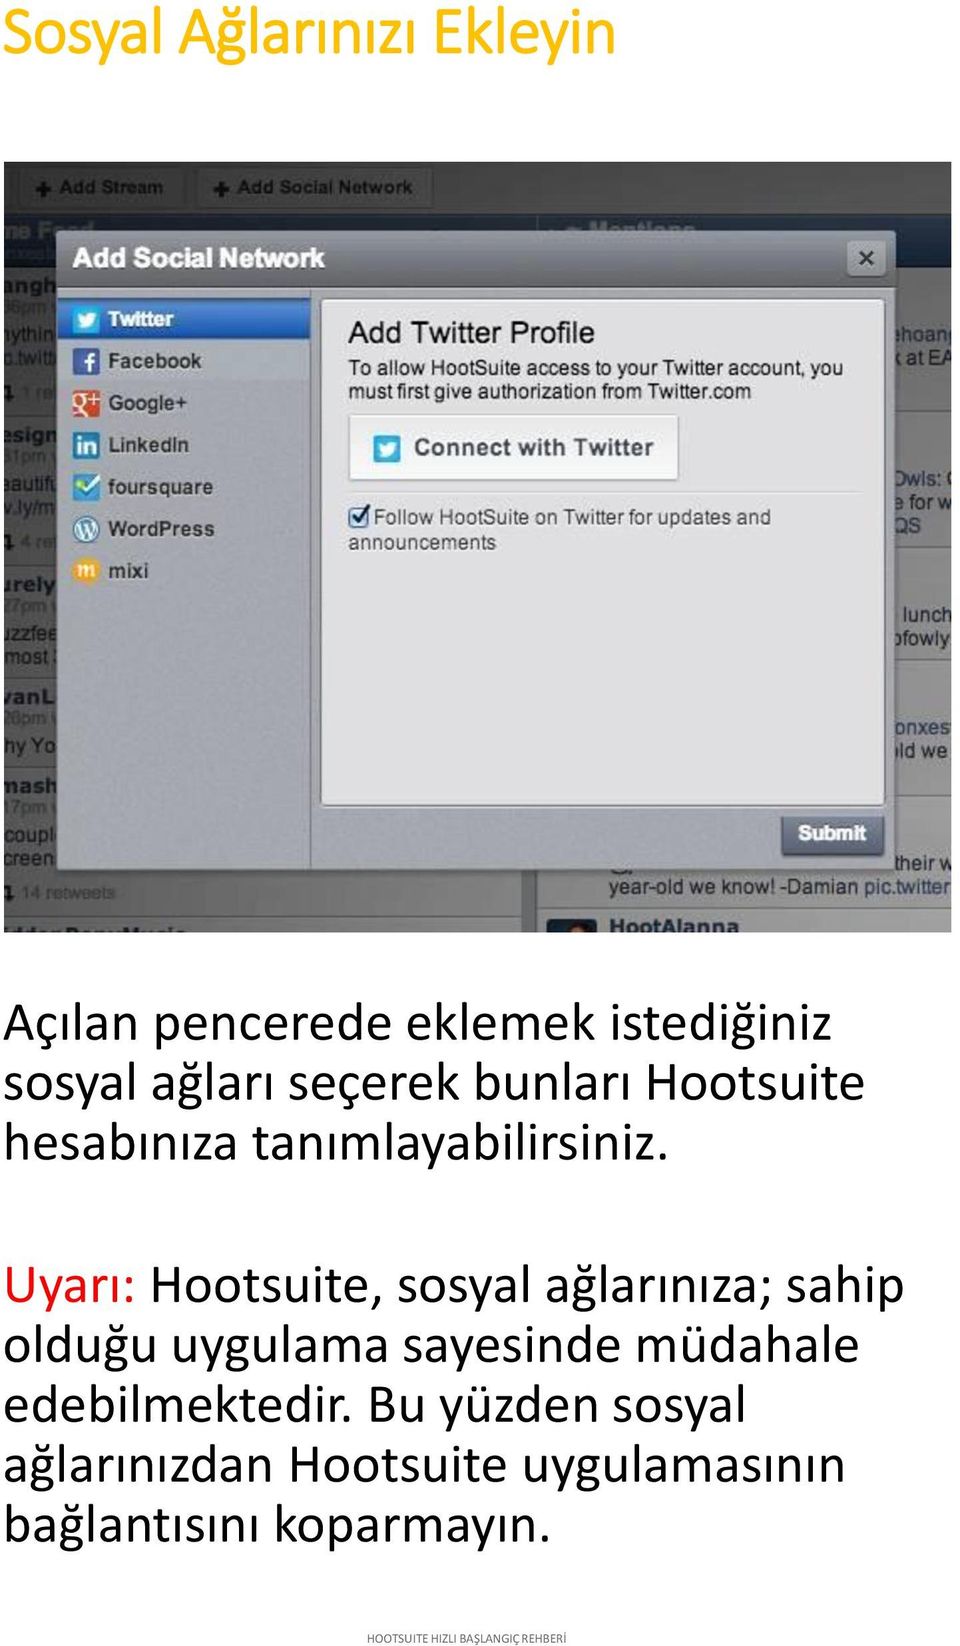 Uyarı: Hootsuite, sosyal ağlarınıza; sahip olduğu uygulama sayesinde